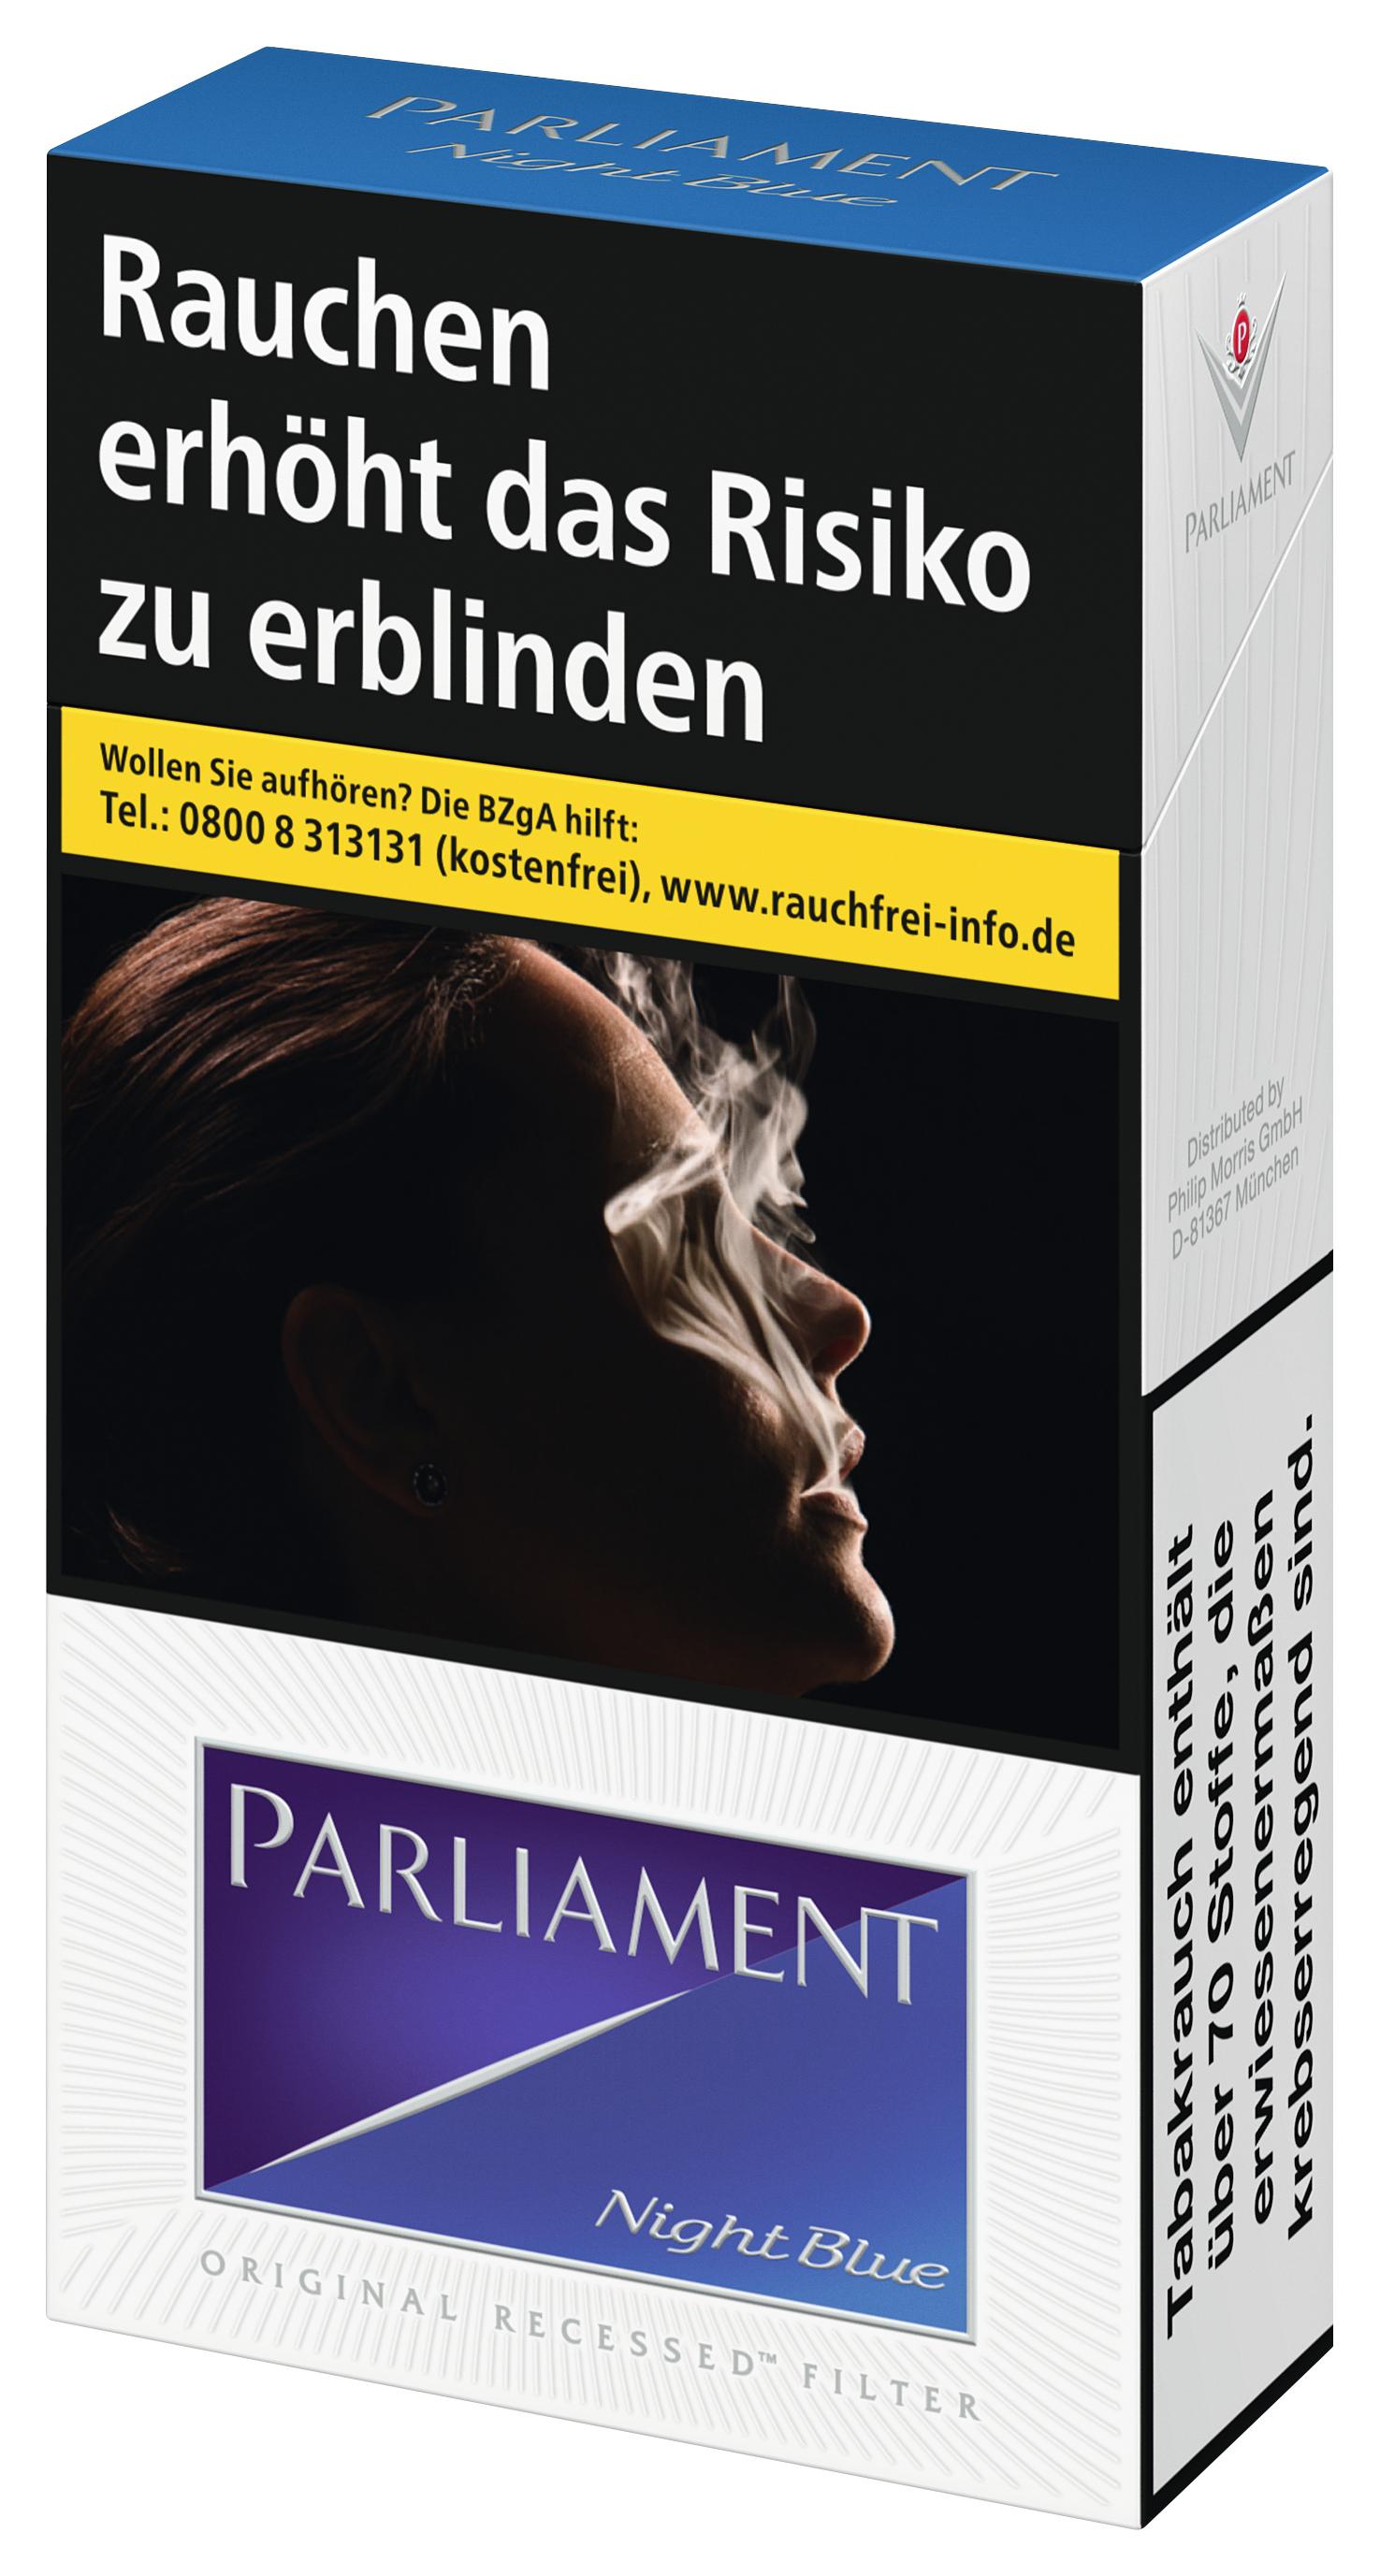 Parliament Zigaretten Night Blue Long 1 Packung